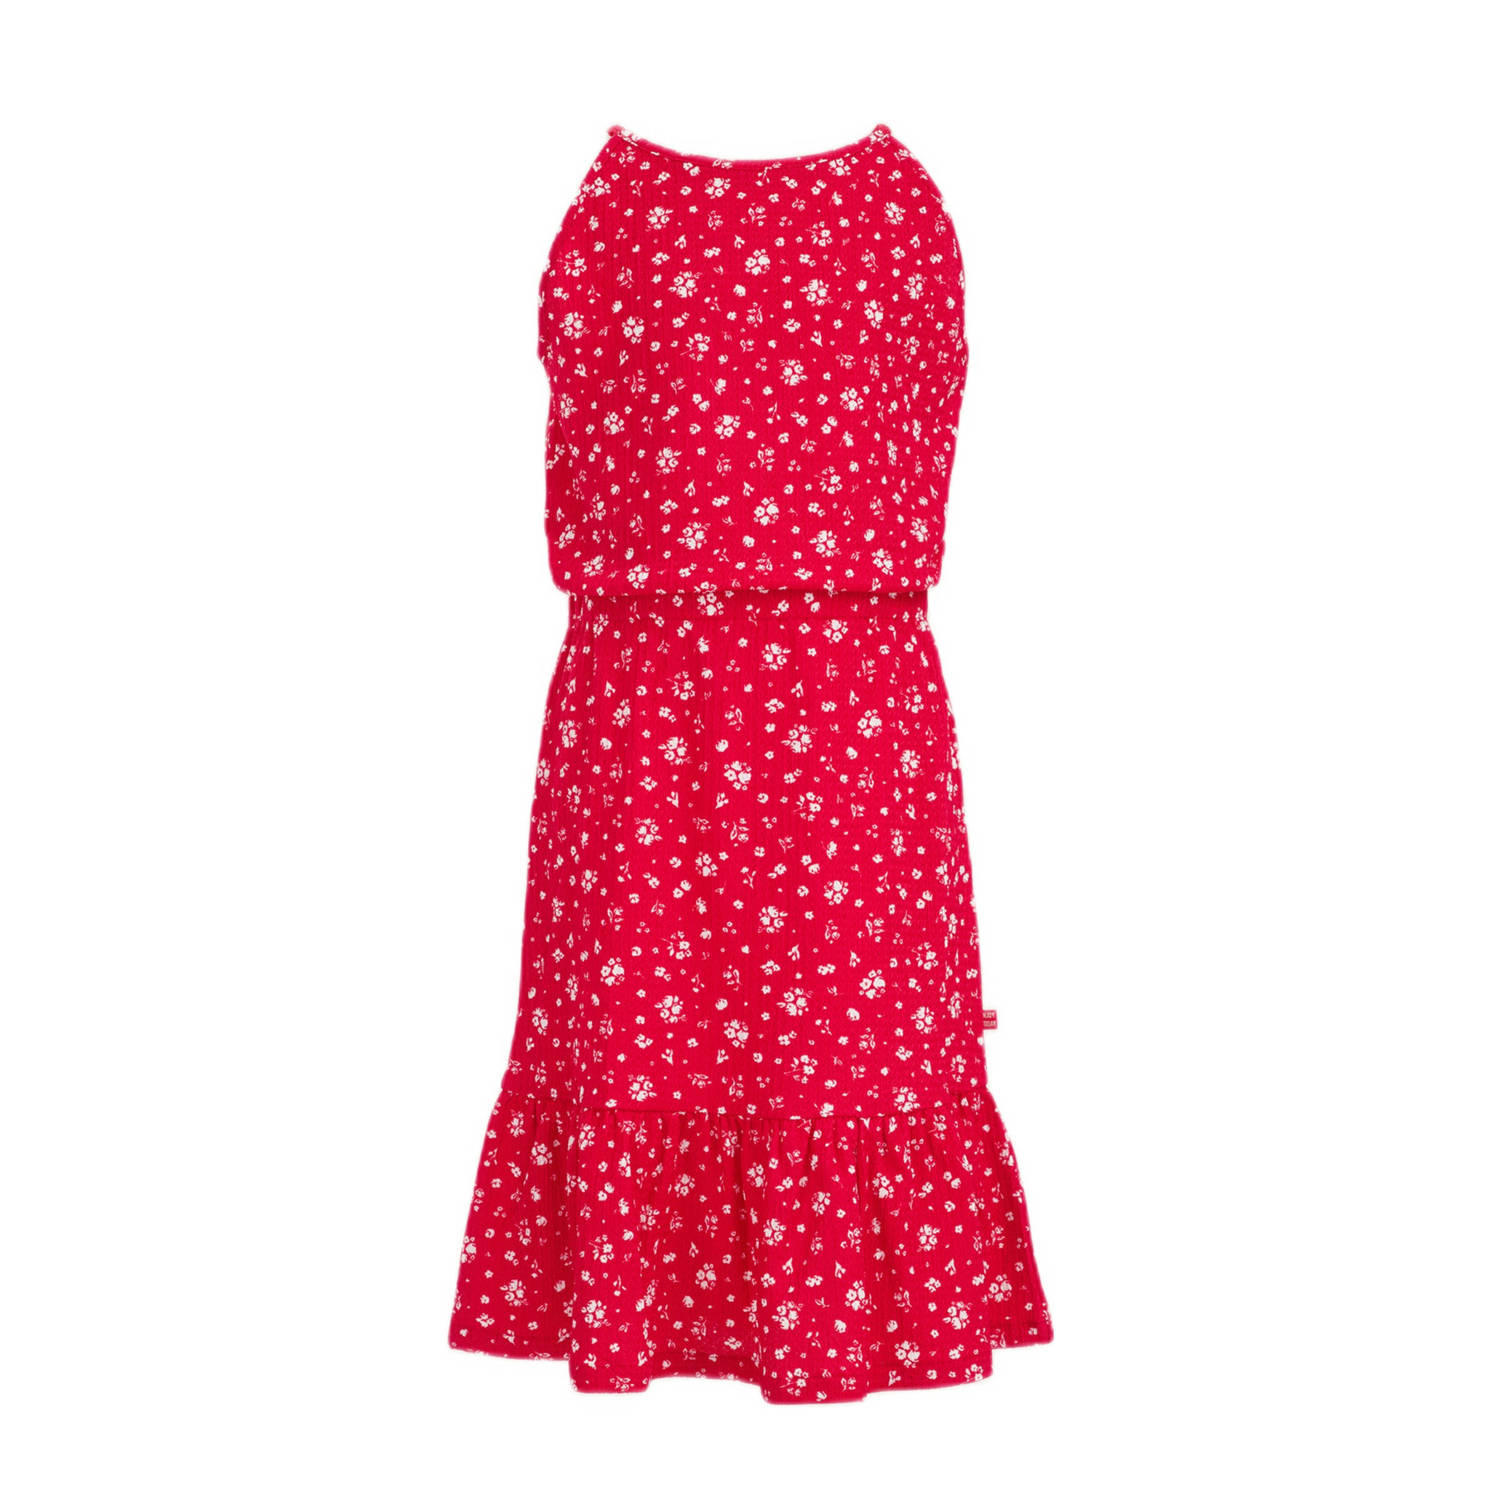 WE Fashion gebloemde halter jurk rood wit Bloemen 146 152